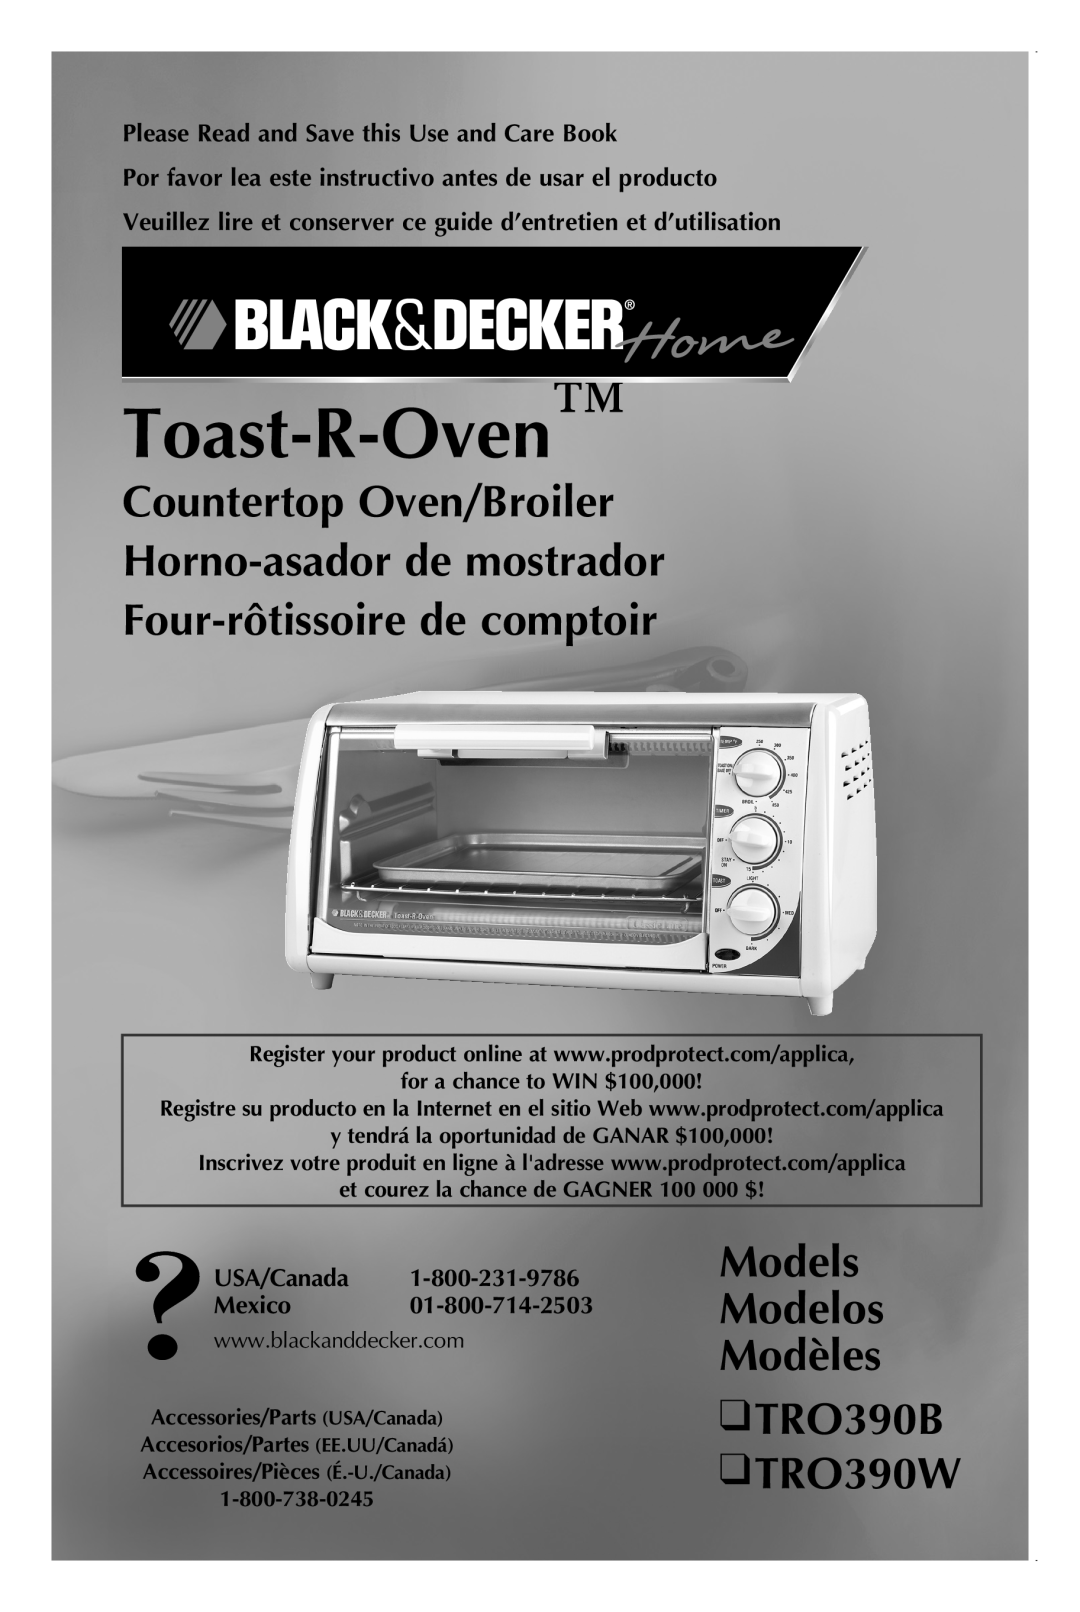 Black & Decker TRO390B manual Countertop Oven/Broiler Horno-asador de mostrador, Four-rôtissoire de comptoir, Toast-R-Oven 